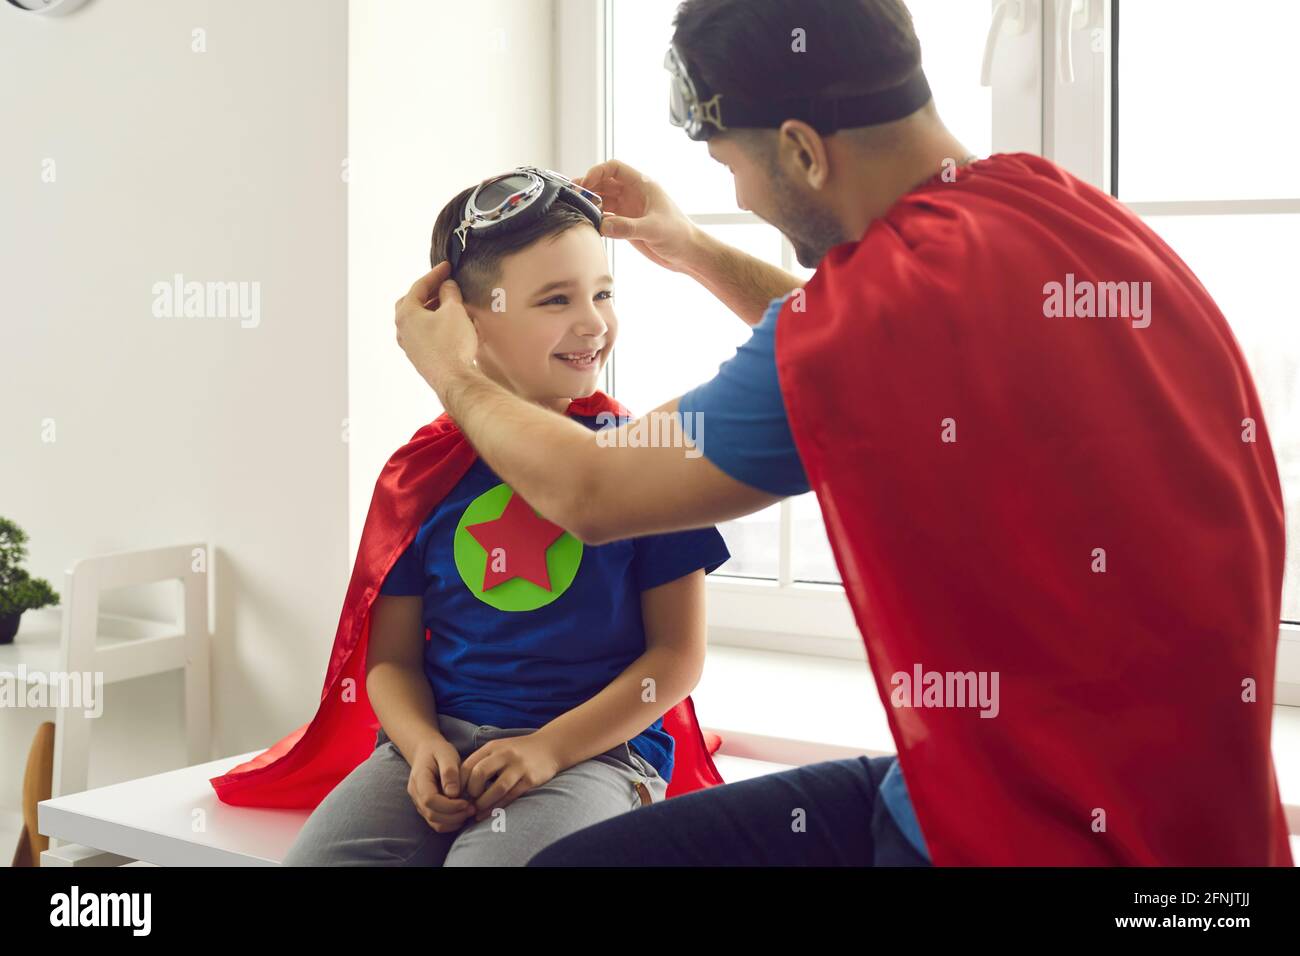 Papa hilft dem kleinen Sohn, beim Spielen eine Pilotenbrille zu tragen Spaß Superhelden Spiele zusammen Stockfoto